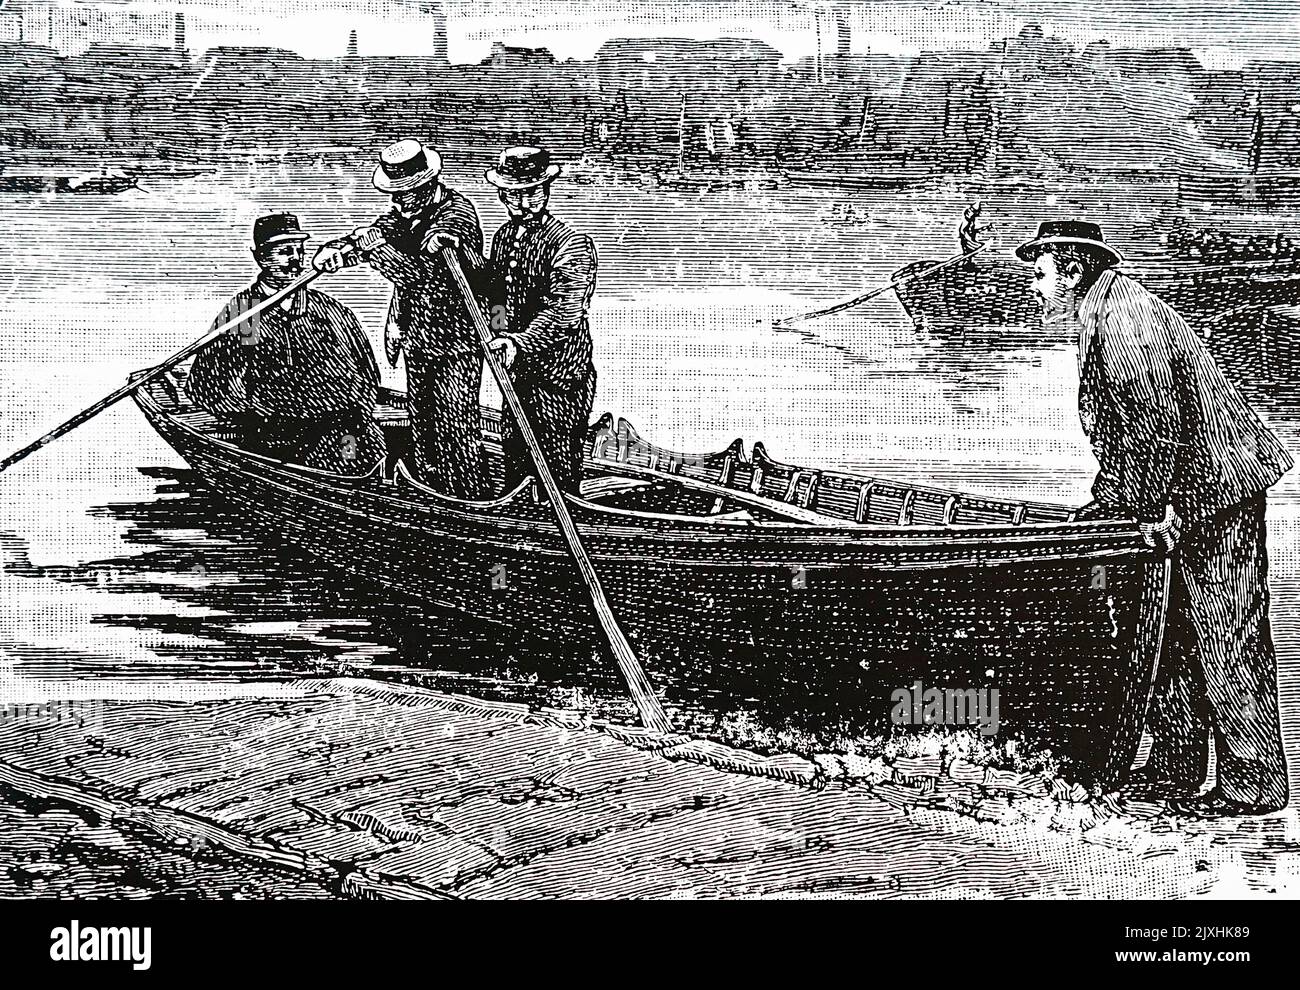 Abbildung der Polizisten der Themse, die für eine Flusspatrouille einschiffen. Datiert aus dem 19.. Jahrhundert Stockfoto